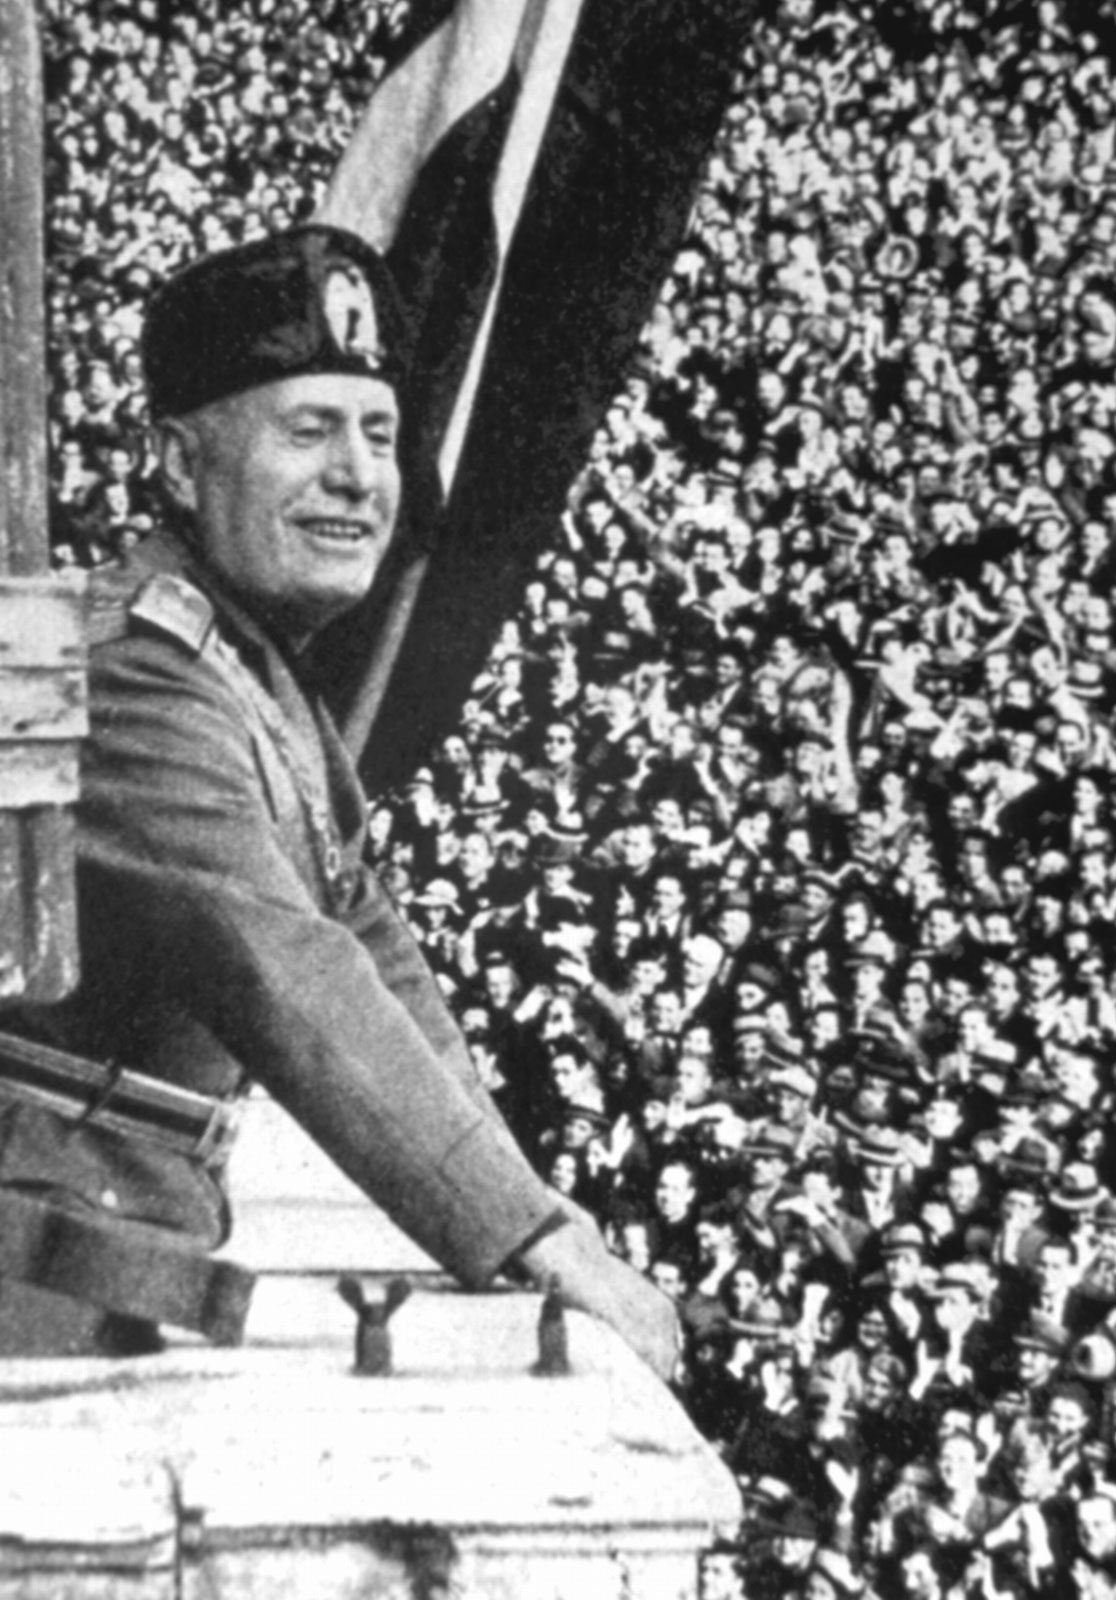 Benito-Mussolini-rally